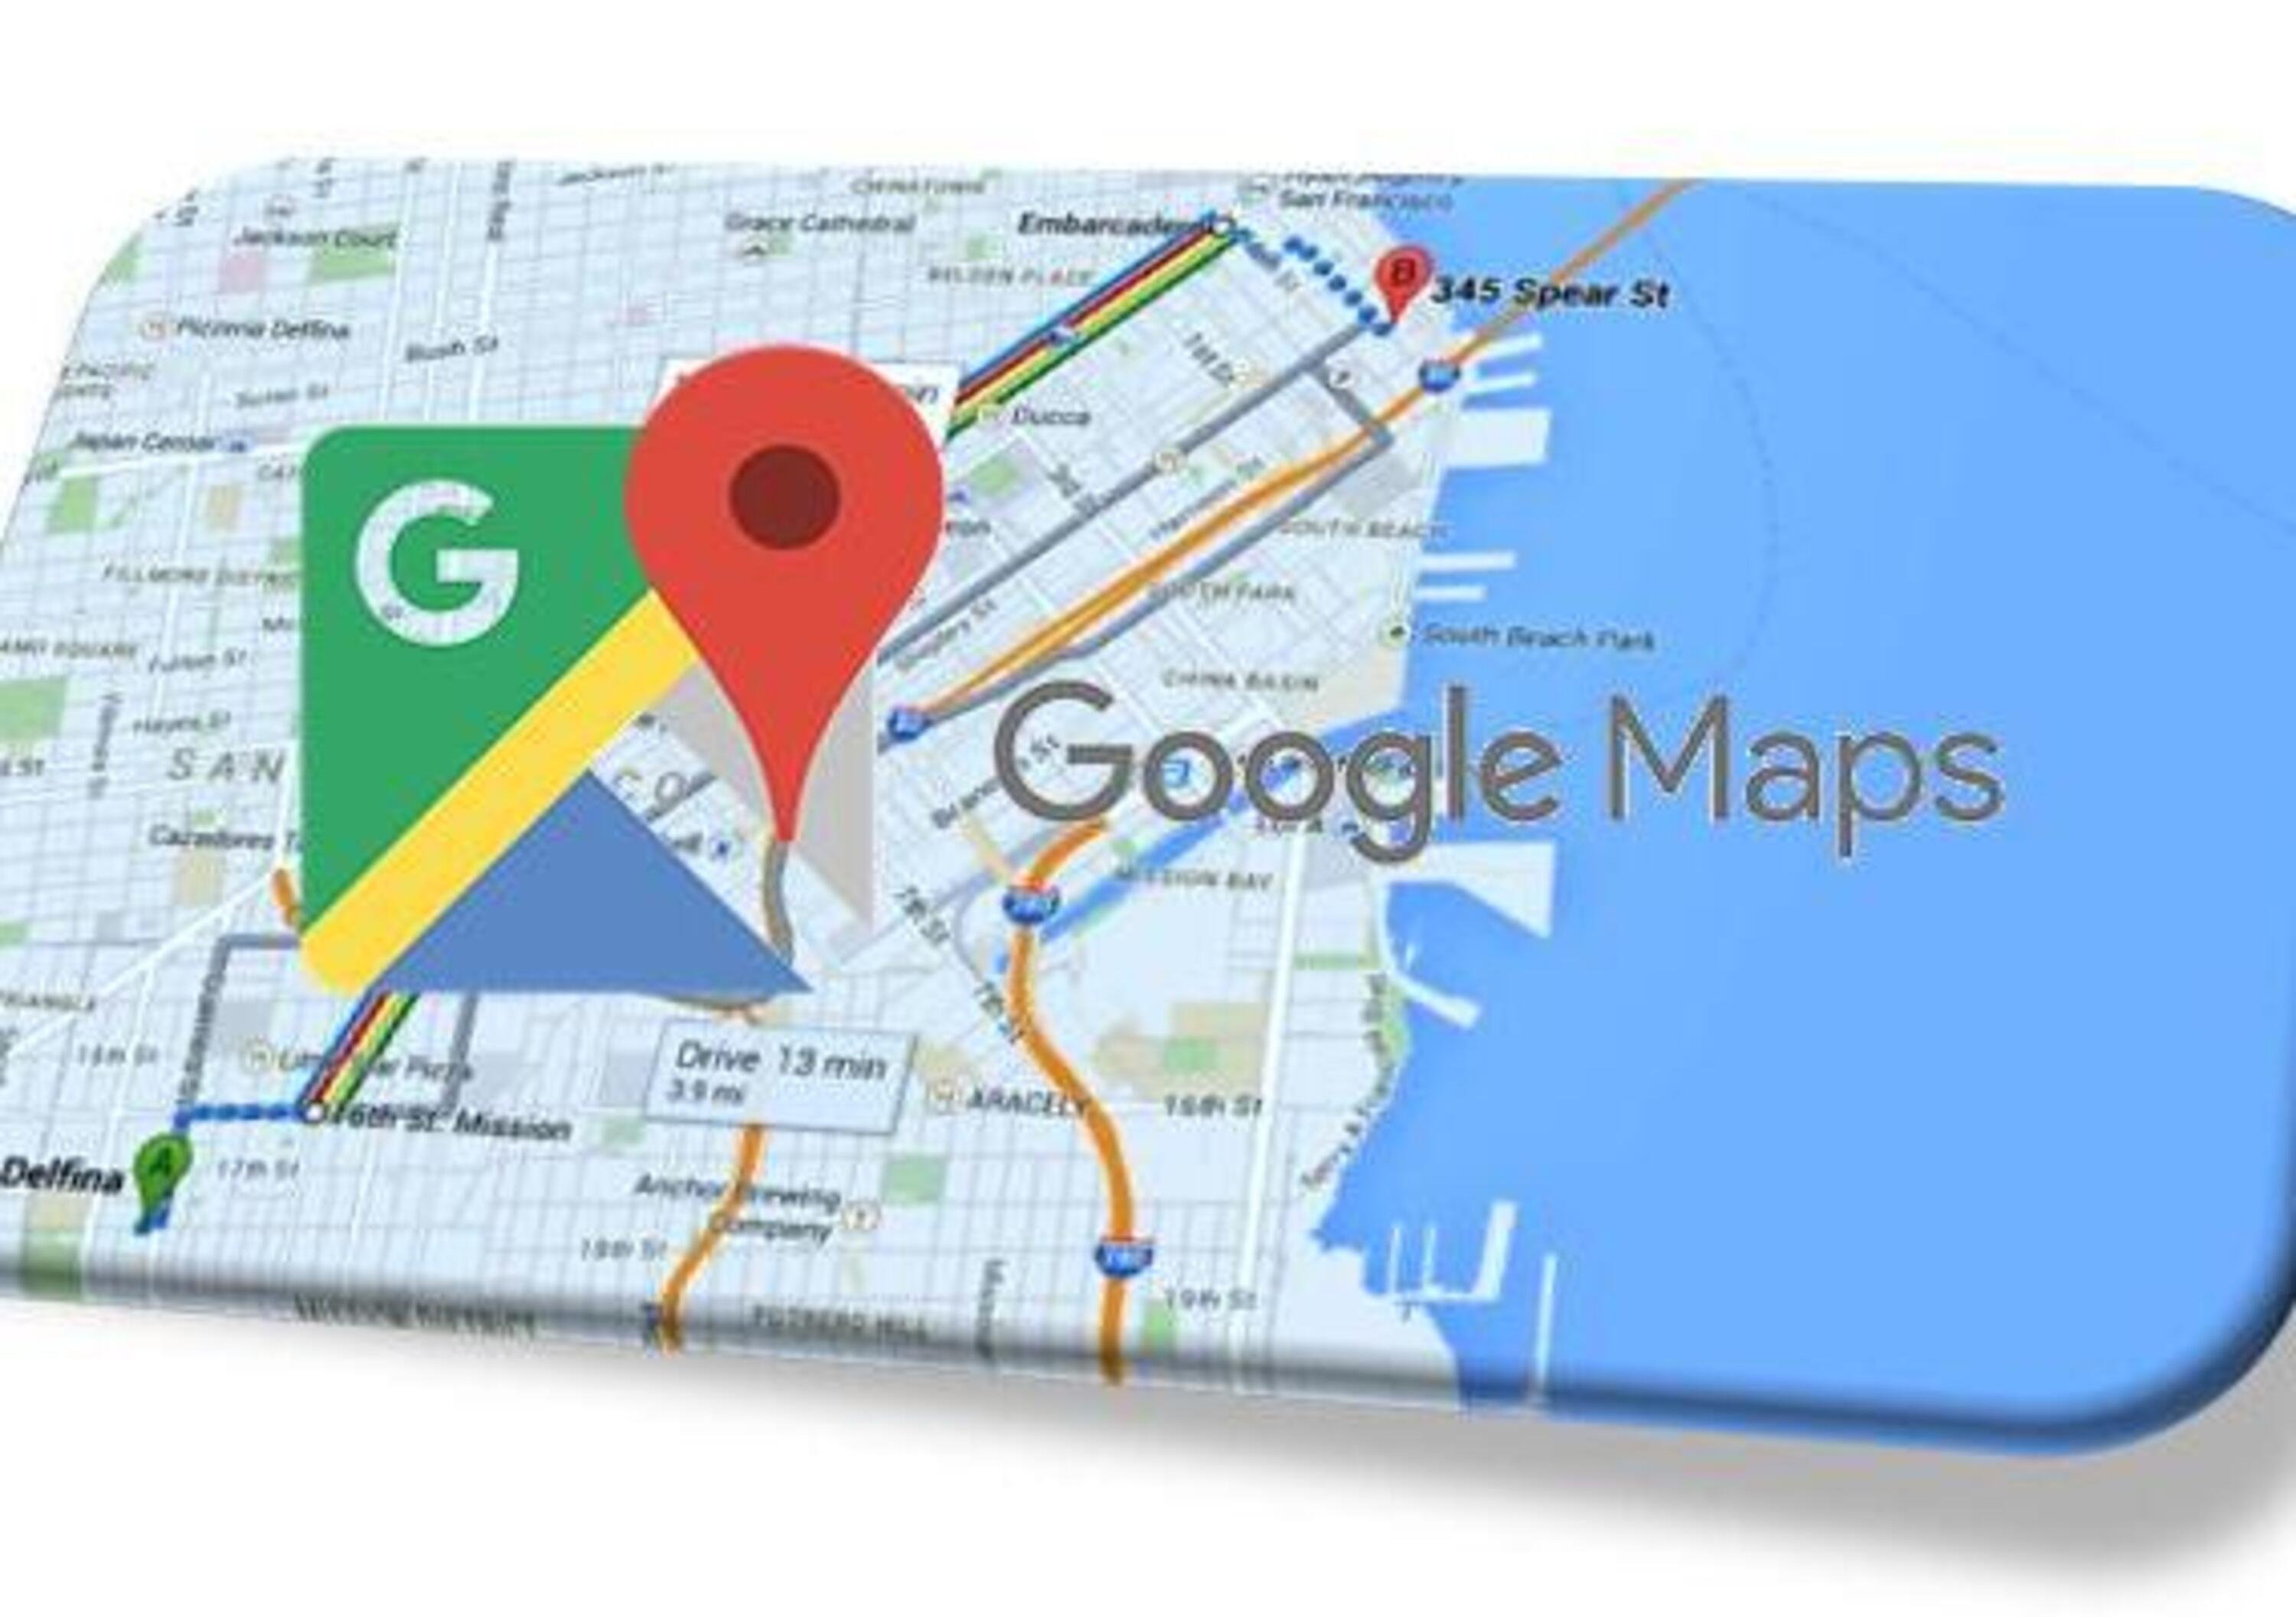 Sicurezza: una funzione di Google Maps previene gli incidenti!